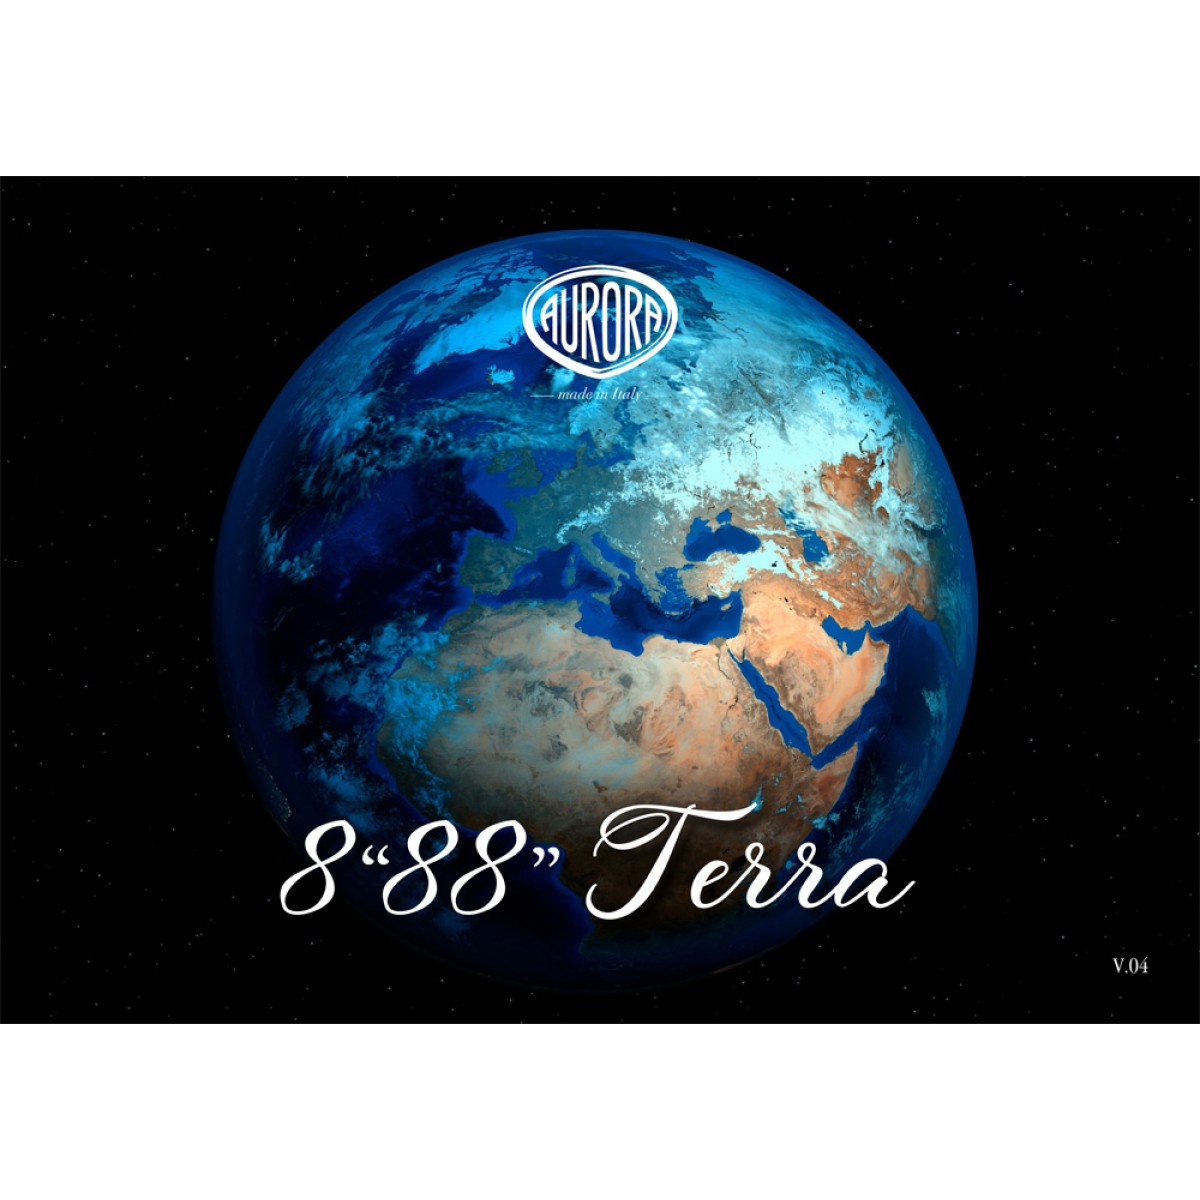 Aurora - 8"88" Terra - Fountain Pen